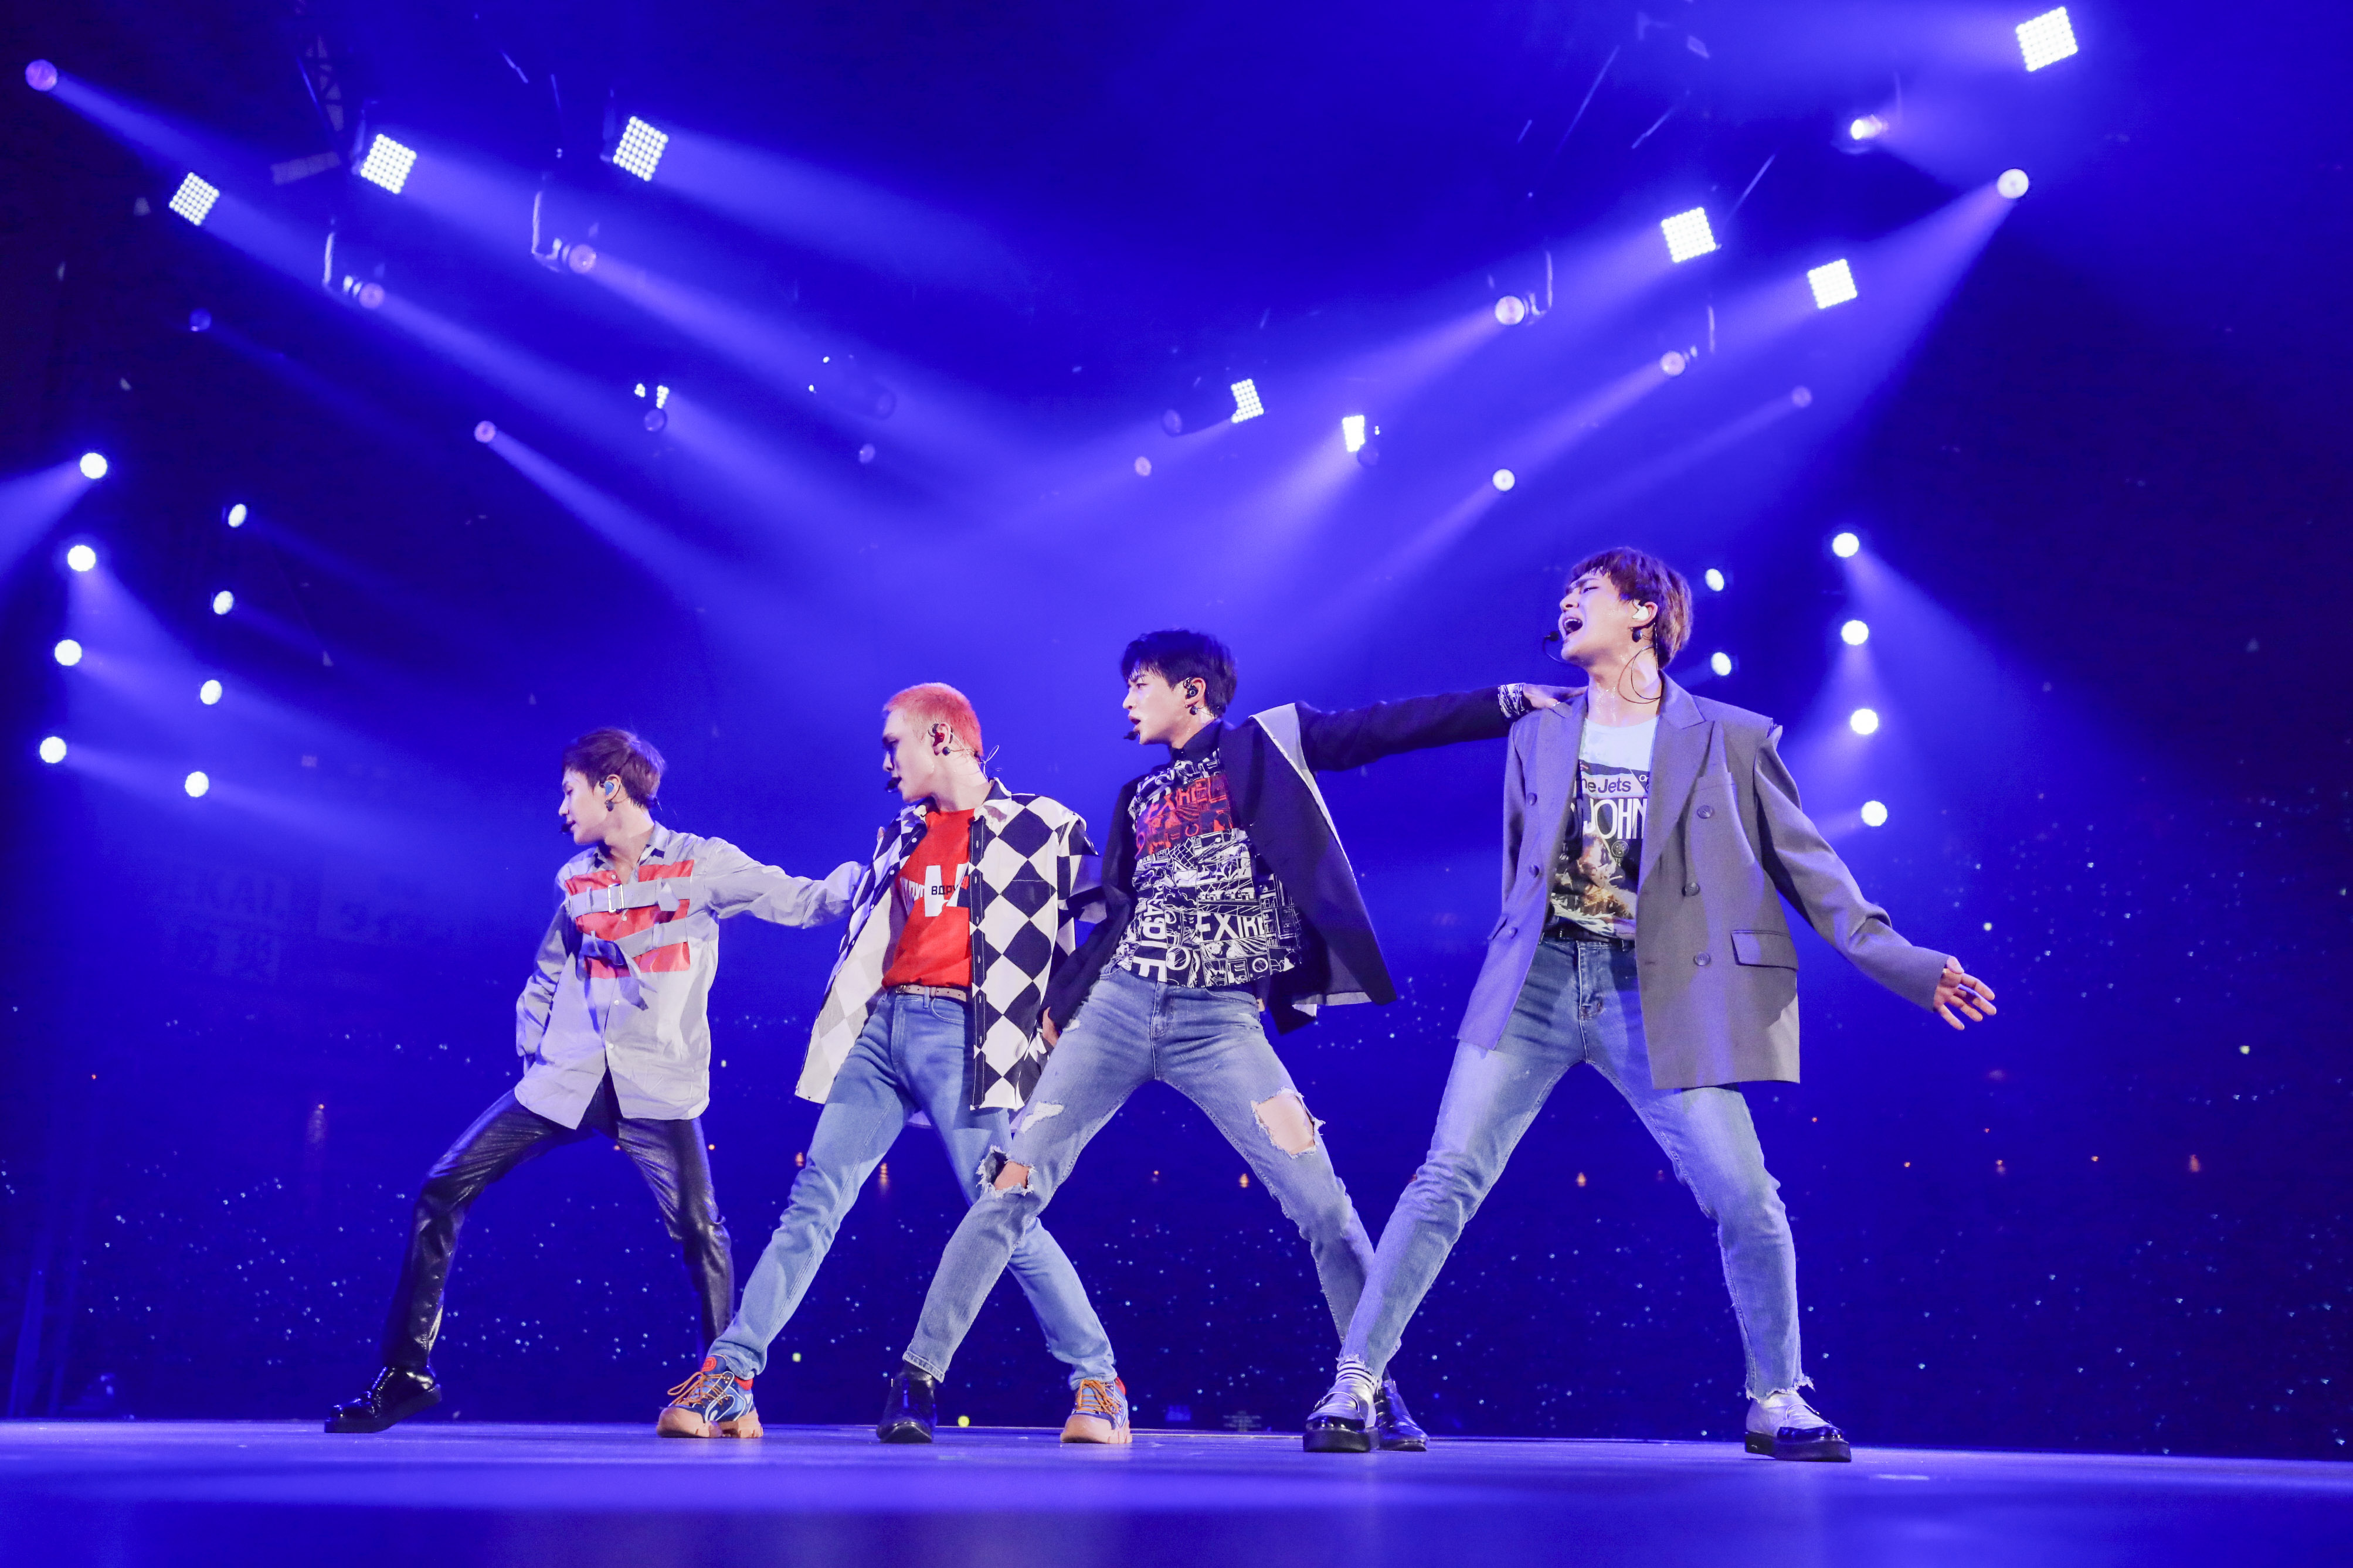 東京ドームでの1日限りのスペシャルファンイベント Shinee World J Presents Shinee Special Fan Event をｗｏｗｏｗで放送 株式会社wowowのプレスリリース